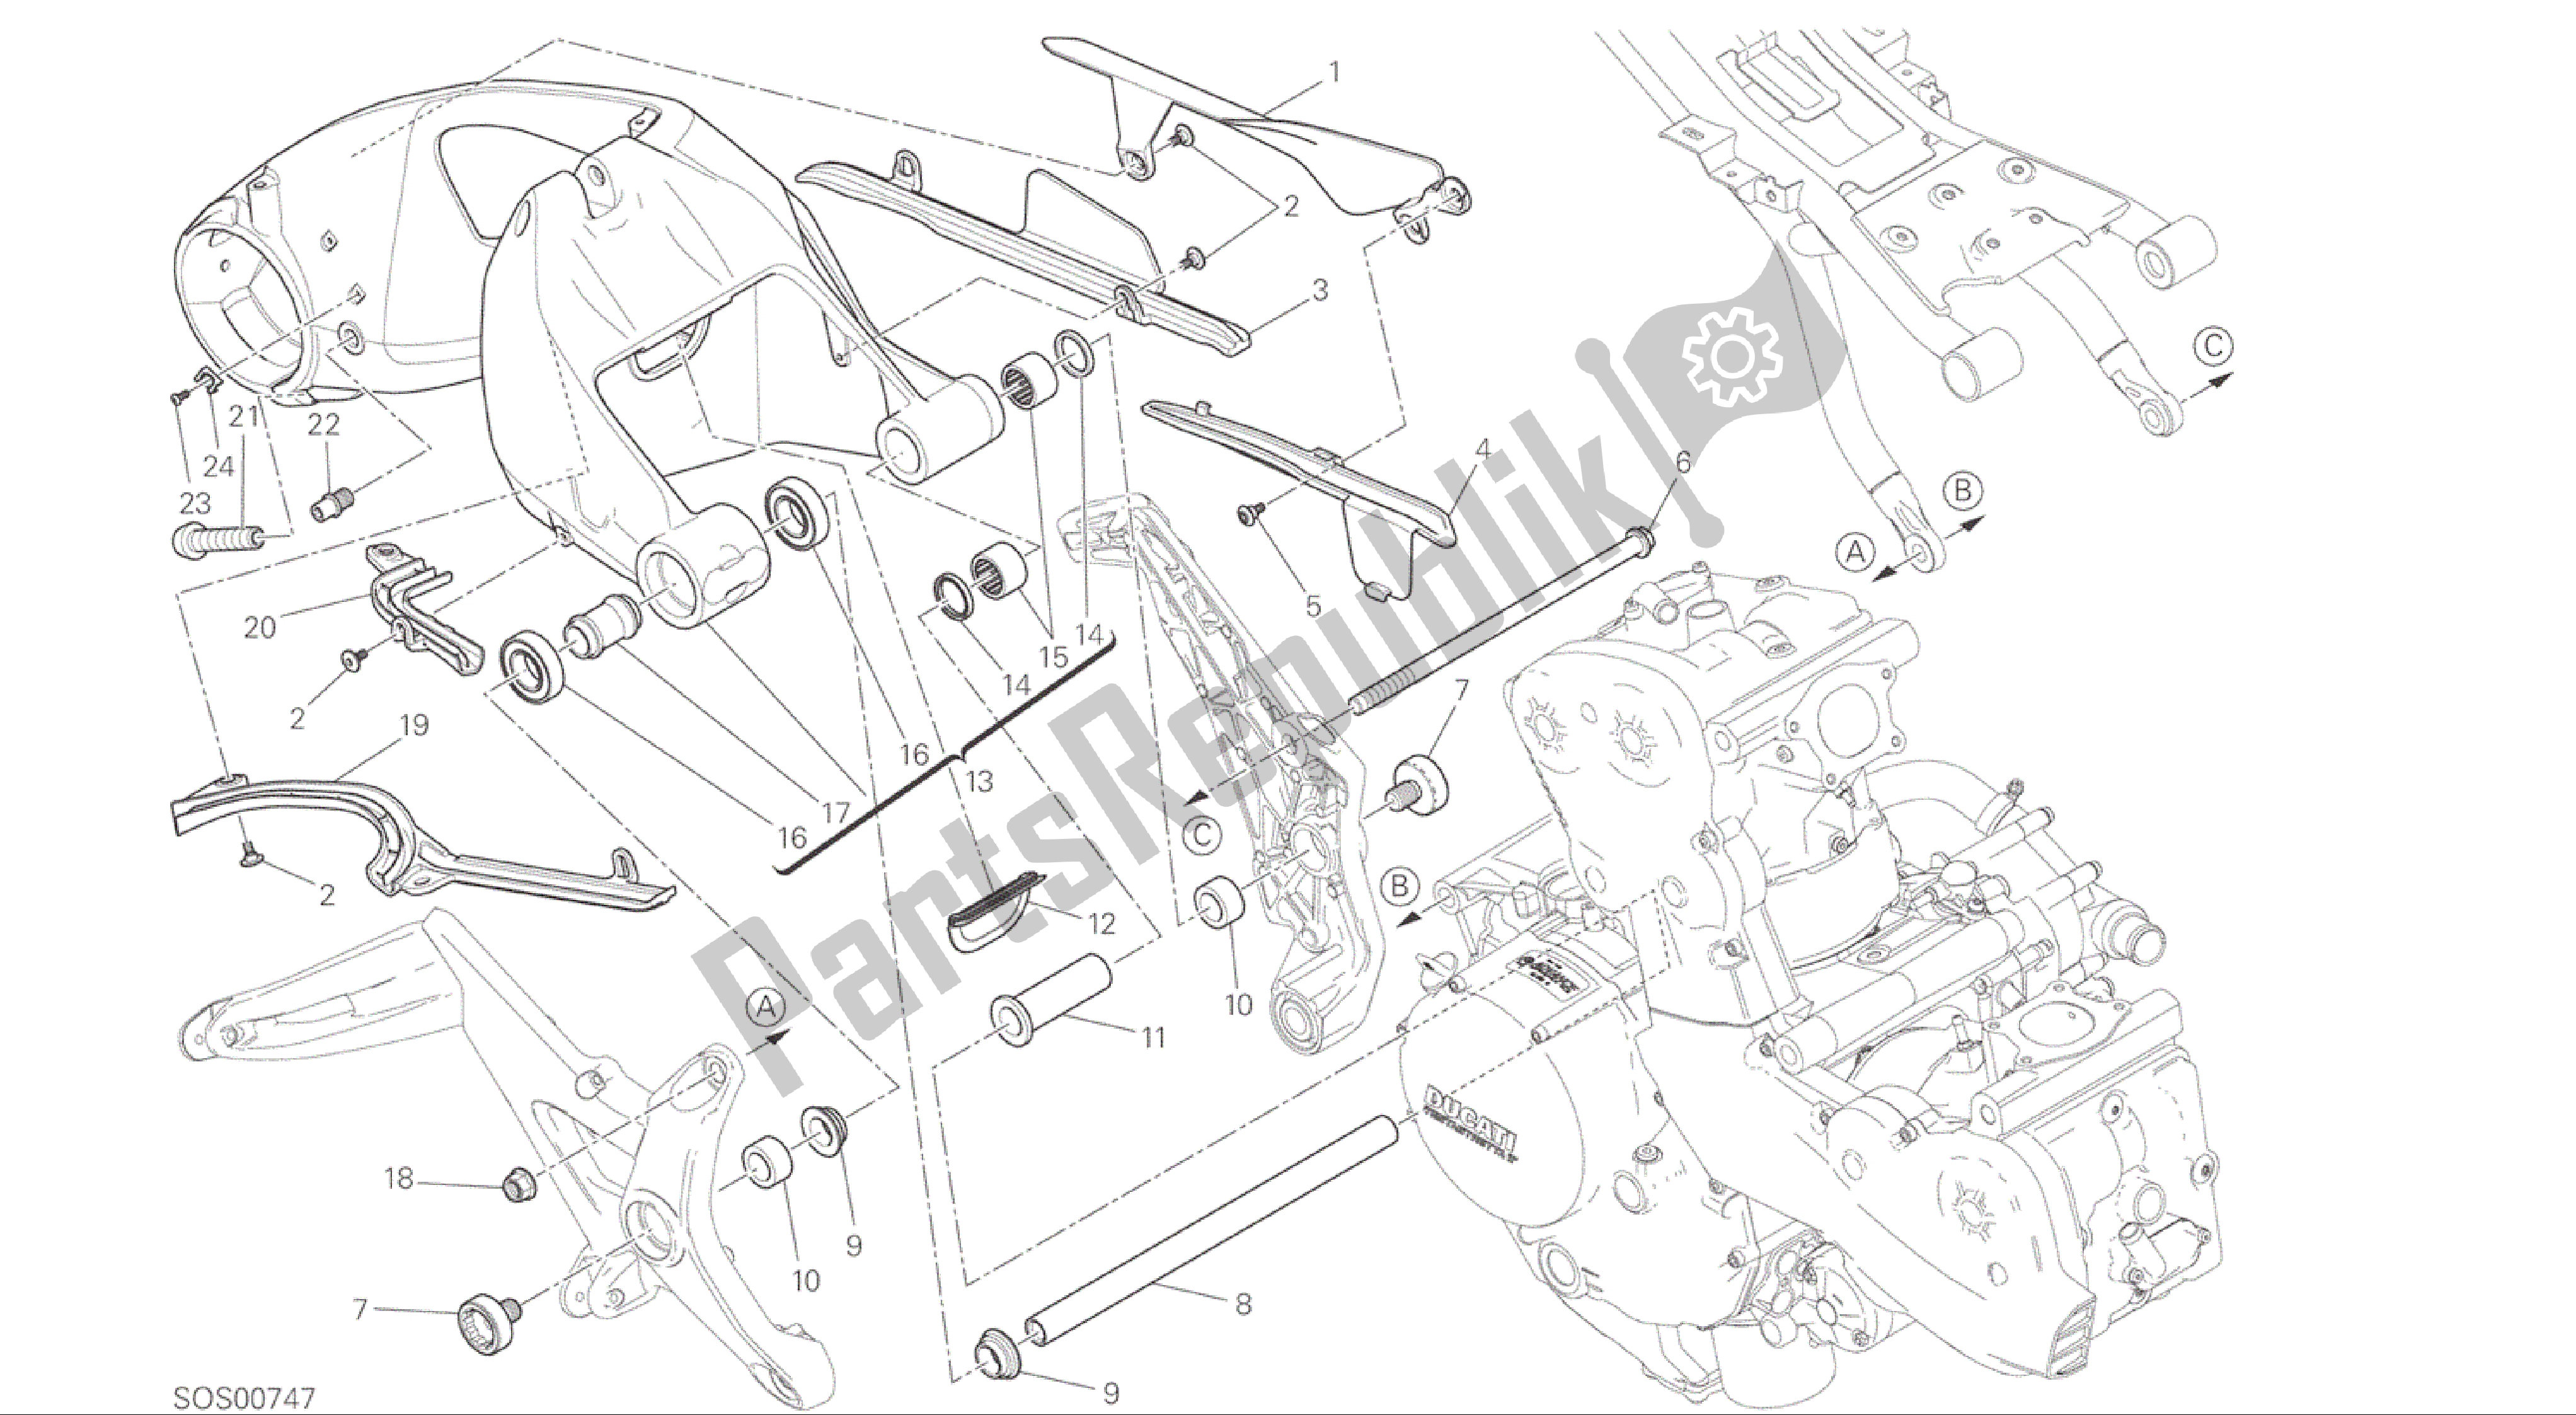 Todas las partes para Dibujo 28a - Forcellone Posteriore [mod: M1200; Xst: Sujetador, Chn, Eur, Fra, Jap, Twn] Marco De Grupo de Ducati Monster 1200 2015